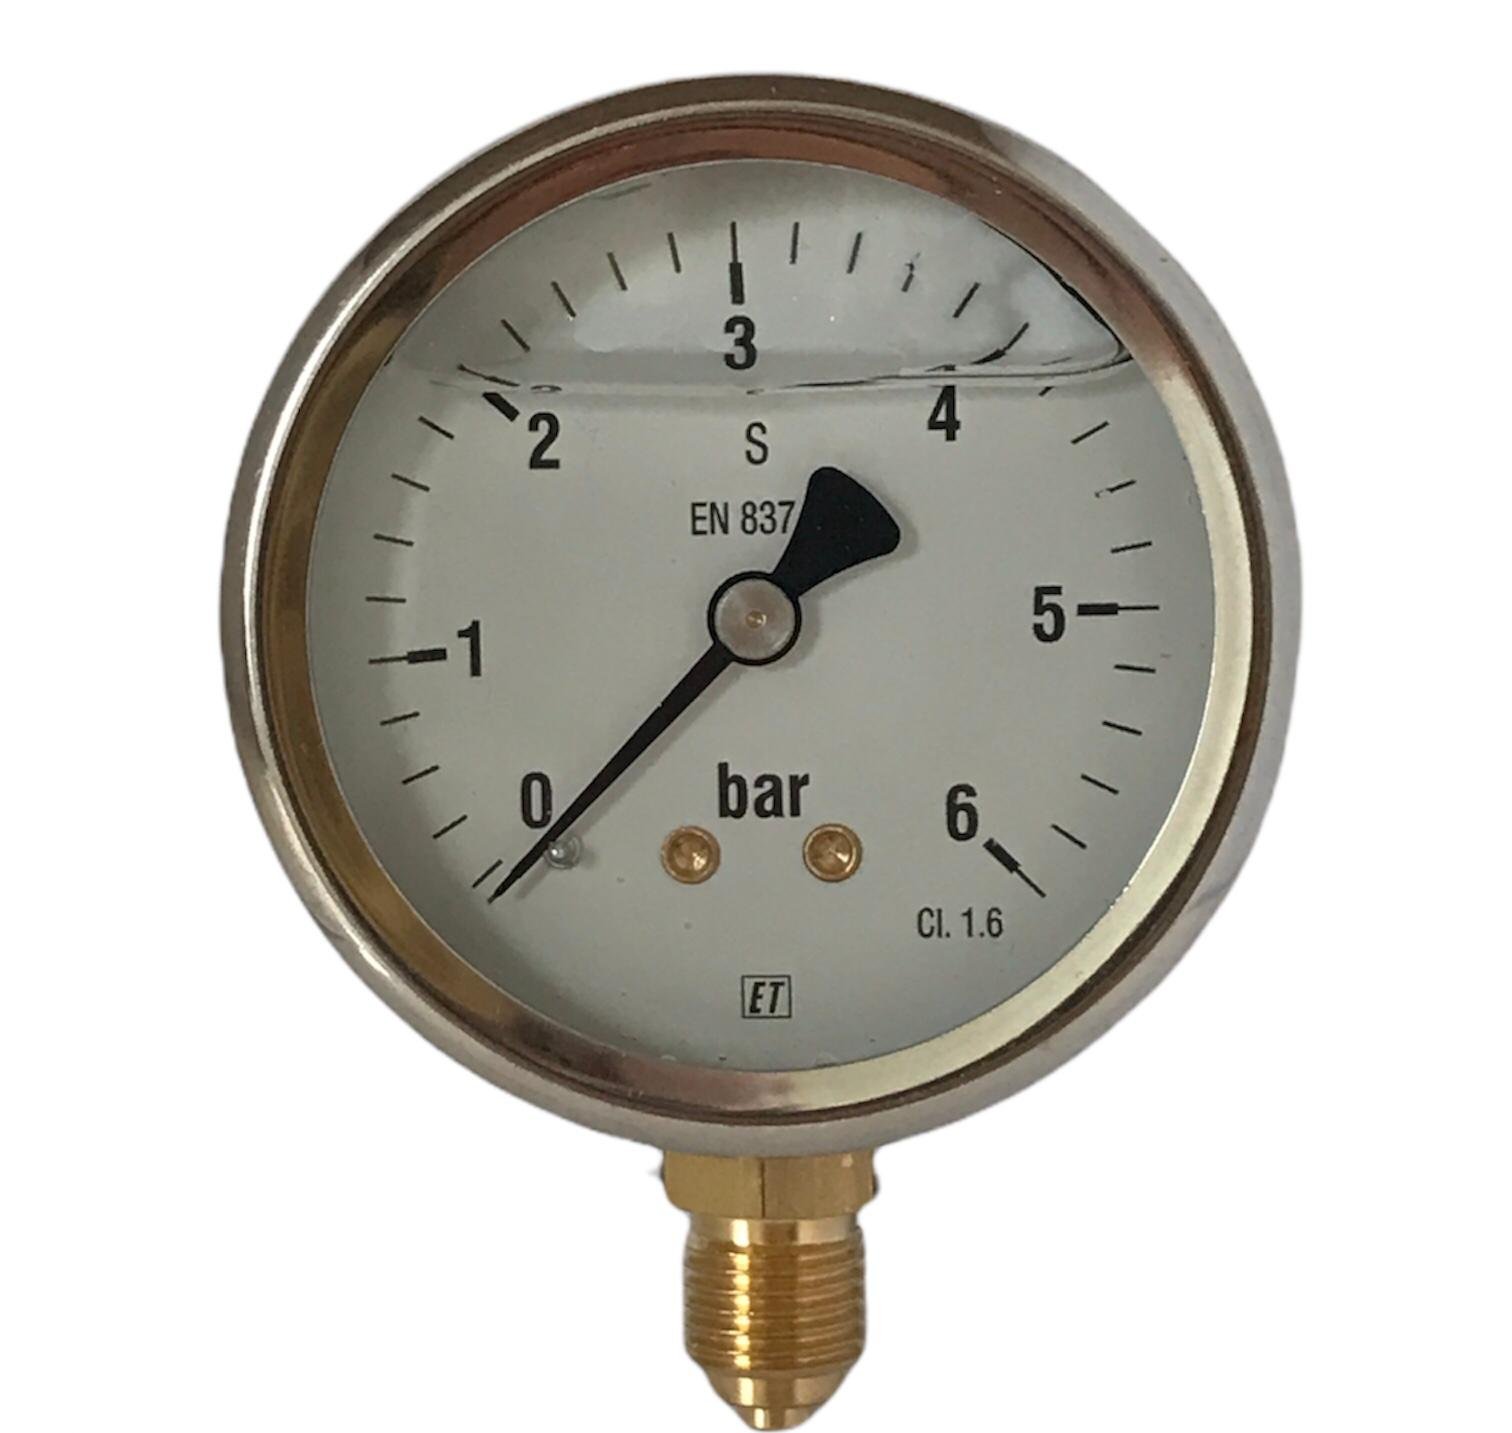 Buisveermanometer met onderaansluiting (glycerinevulling) 0 - 10 bar
38.4054

Webshop » Beregening » Pompen toebehoren